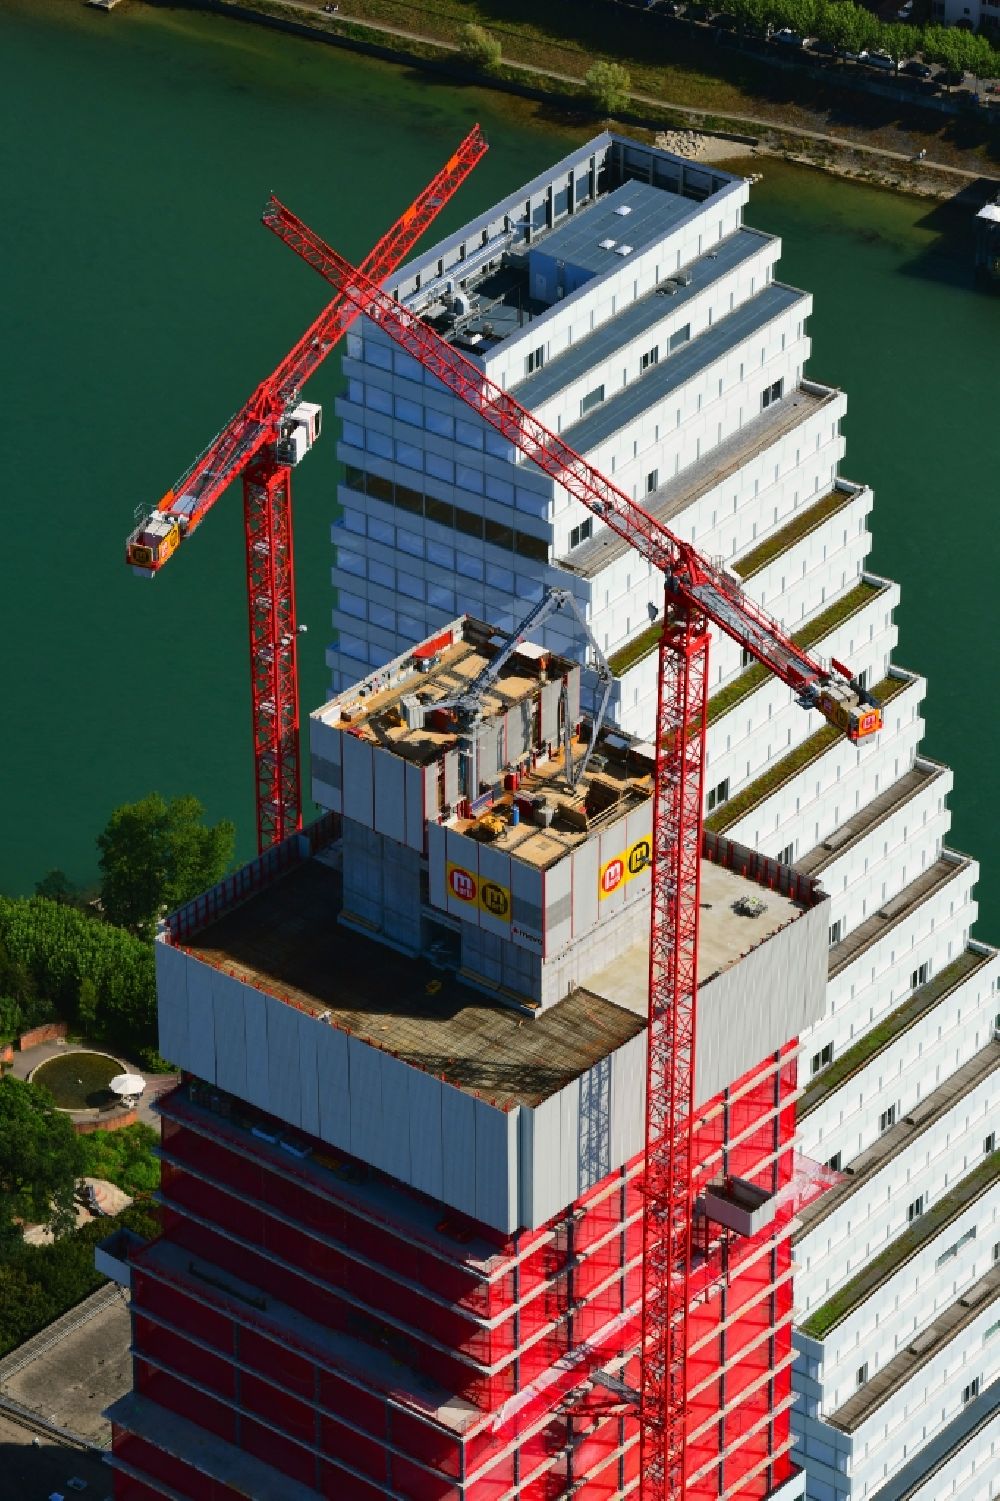 Luftbild Basel - Erweiterungs- Baustellen und Baukräne am Areal und Betriebsgelände der Pharmafirma Roche mit dem Roche- Turm - Hochhaus in Basel in der Schweiz